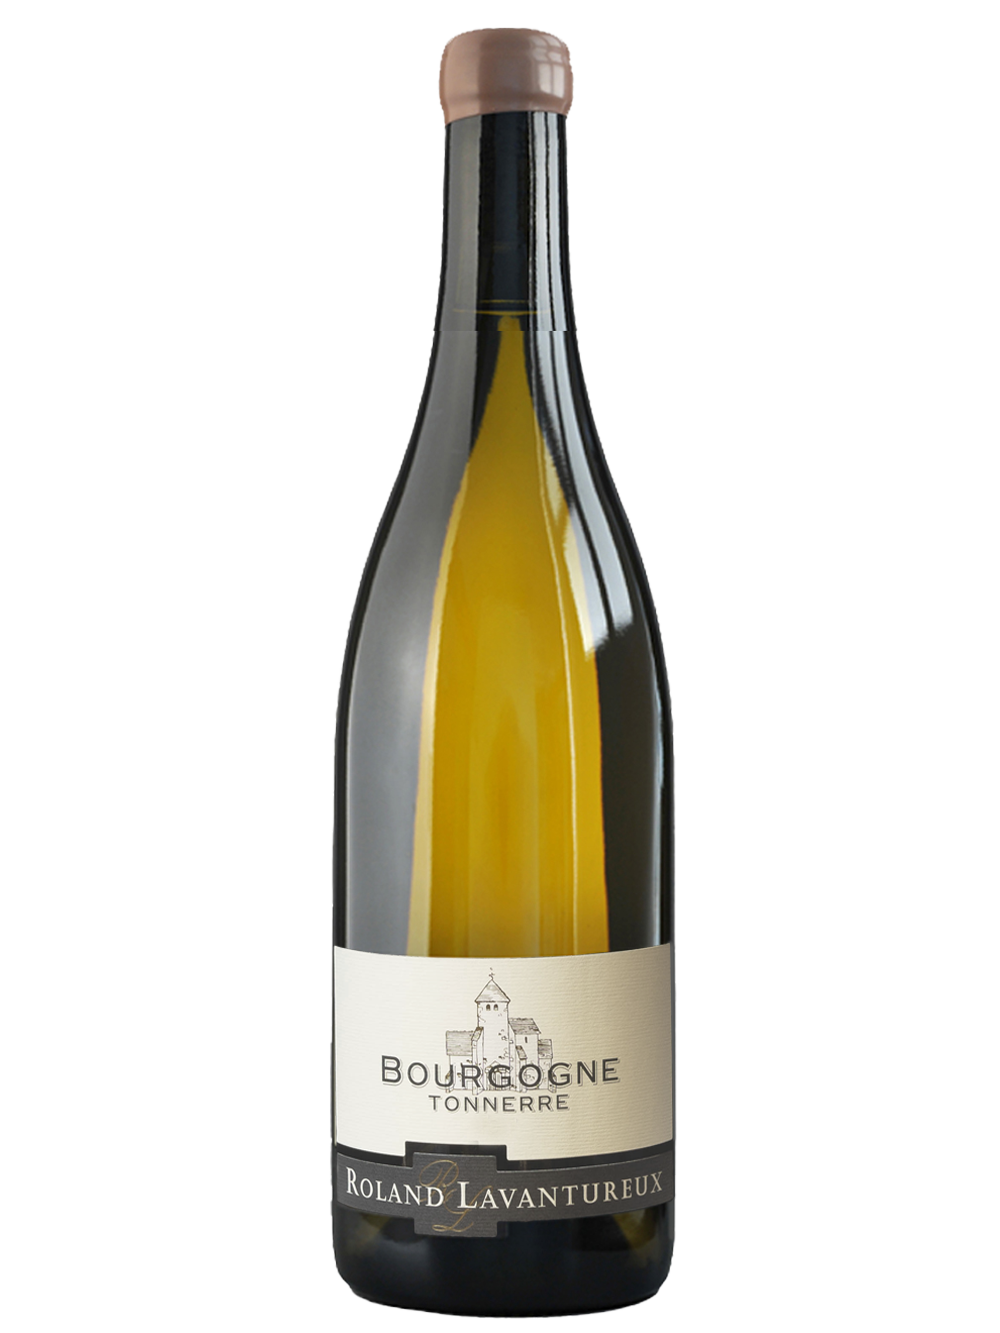 Bourgogne Tonnerre